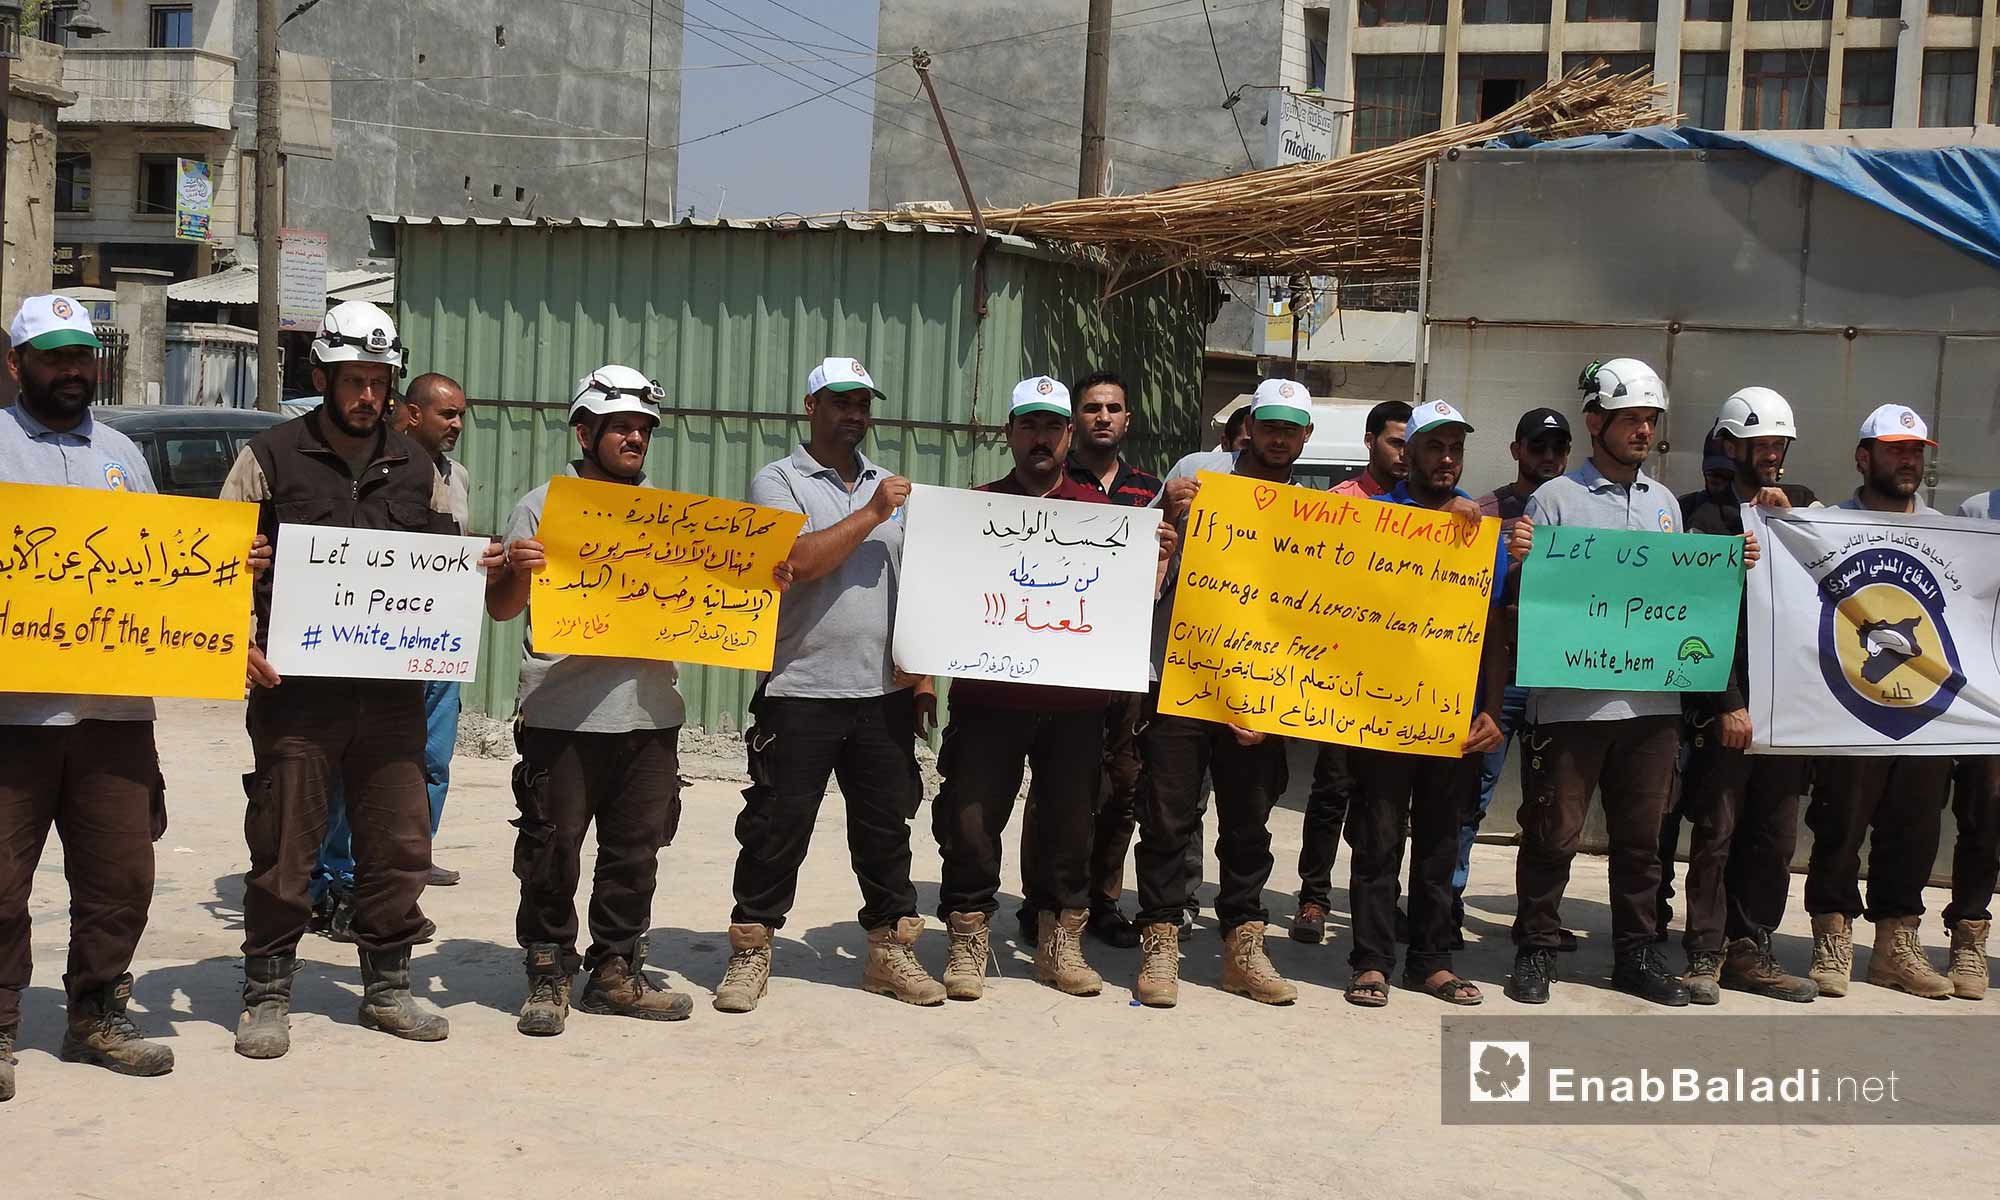 وقفة تضامنية لعناصر الدفاع المدني في إعزاز بريف حلب الشمالي تضامنًا مع ضحايا المنظمة في سرمين - 13 آب 2017 (عنب بلدي)